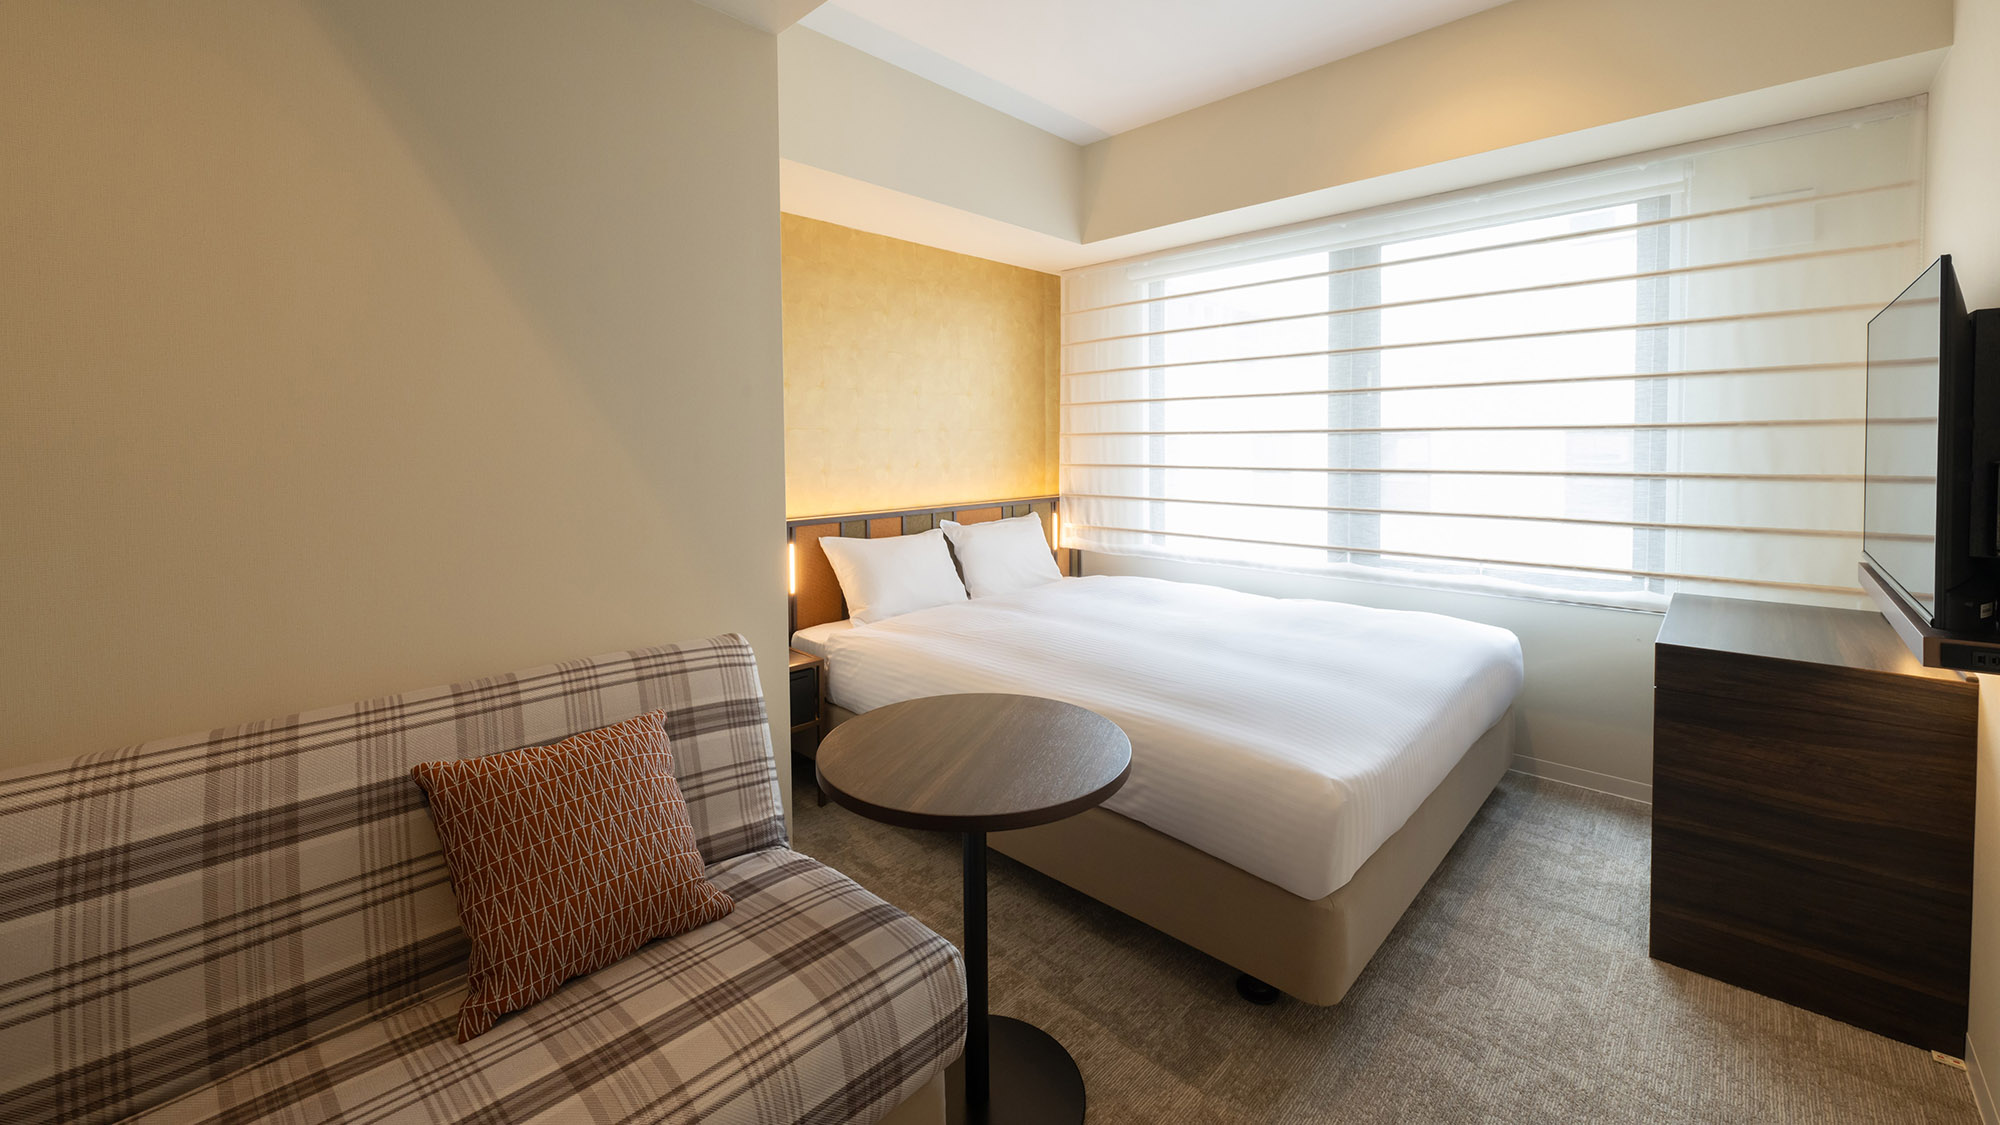 【スーペリアダブル/20-23m²】ソファをベッドとして活用することで最大3名様までご宿泊可能です。